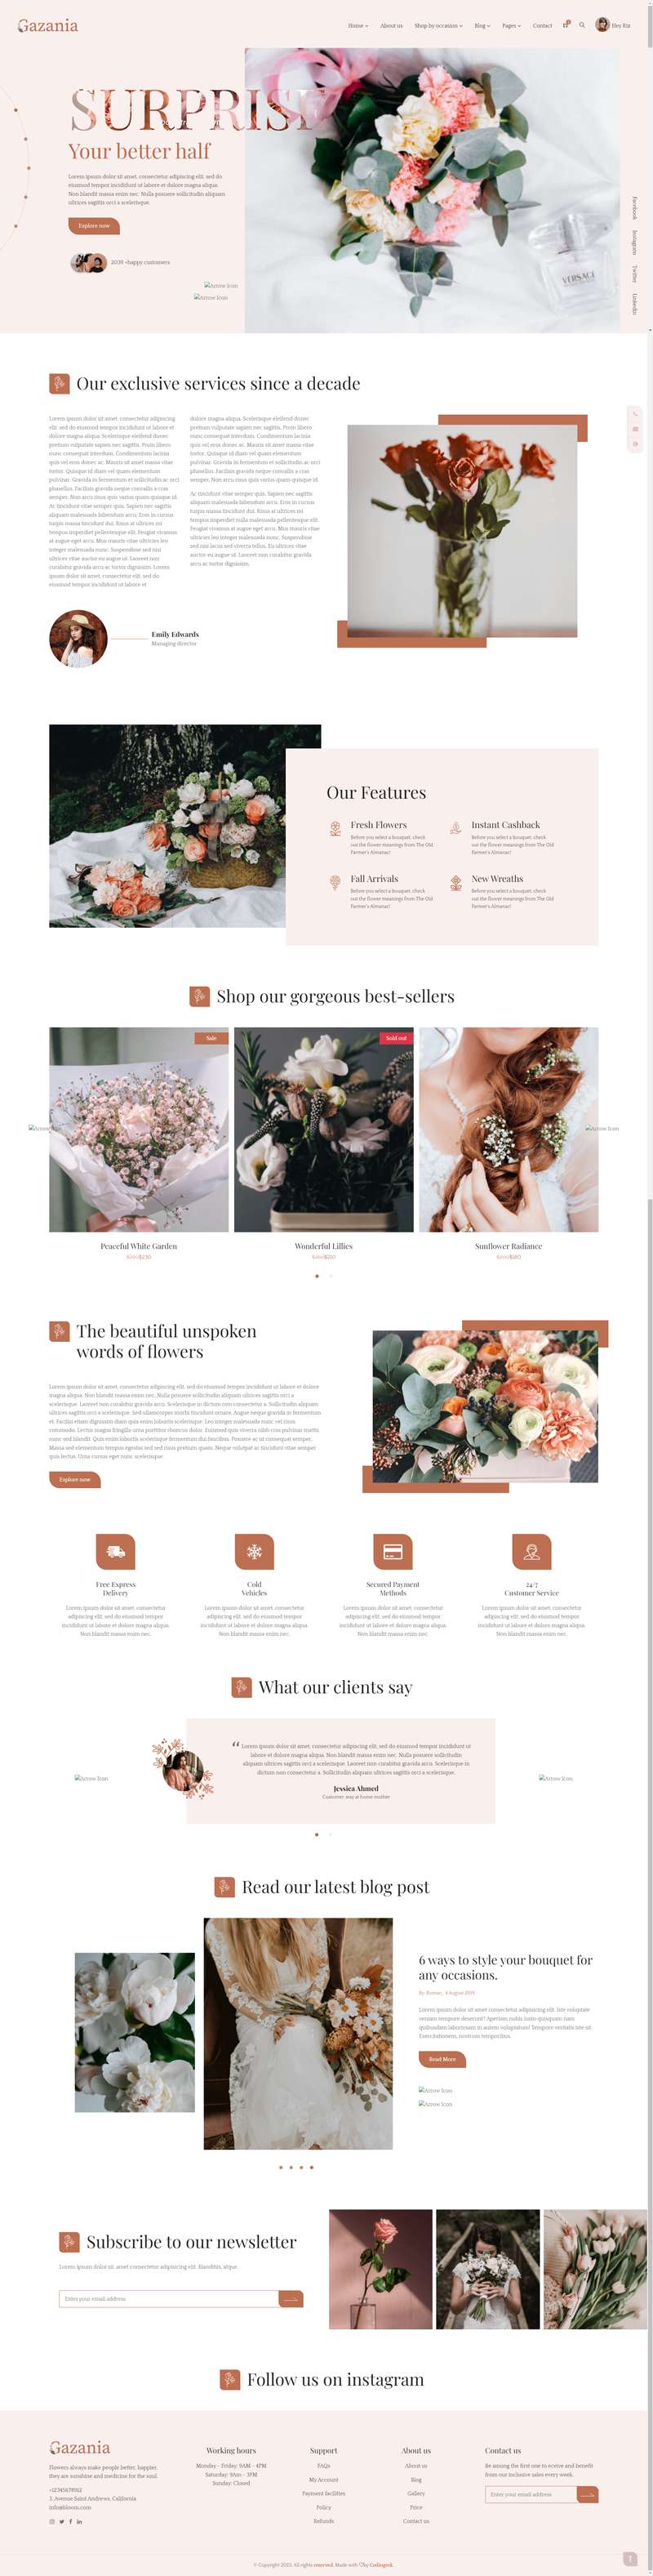 网页设计模板网站，响应式鲜花店网站设计